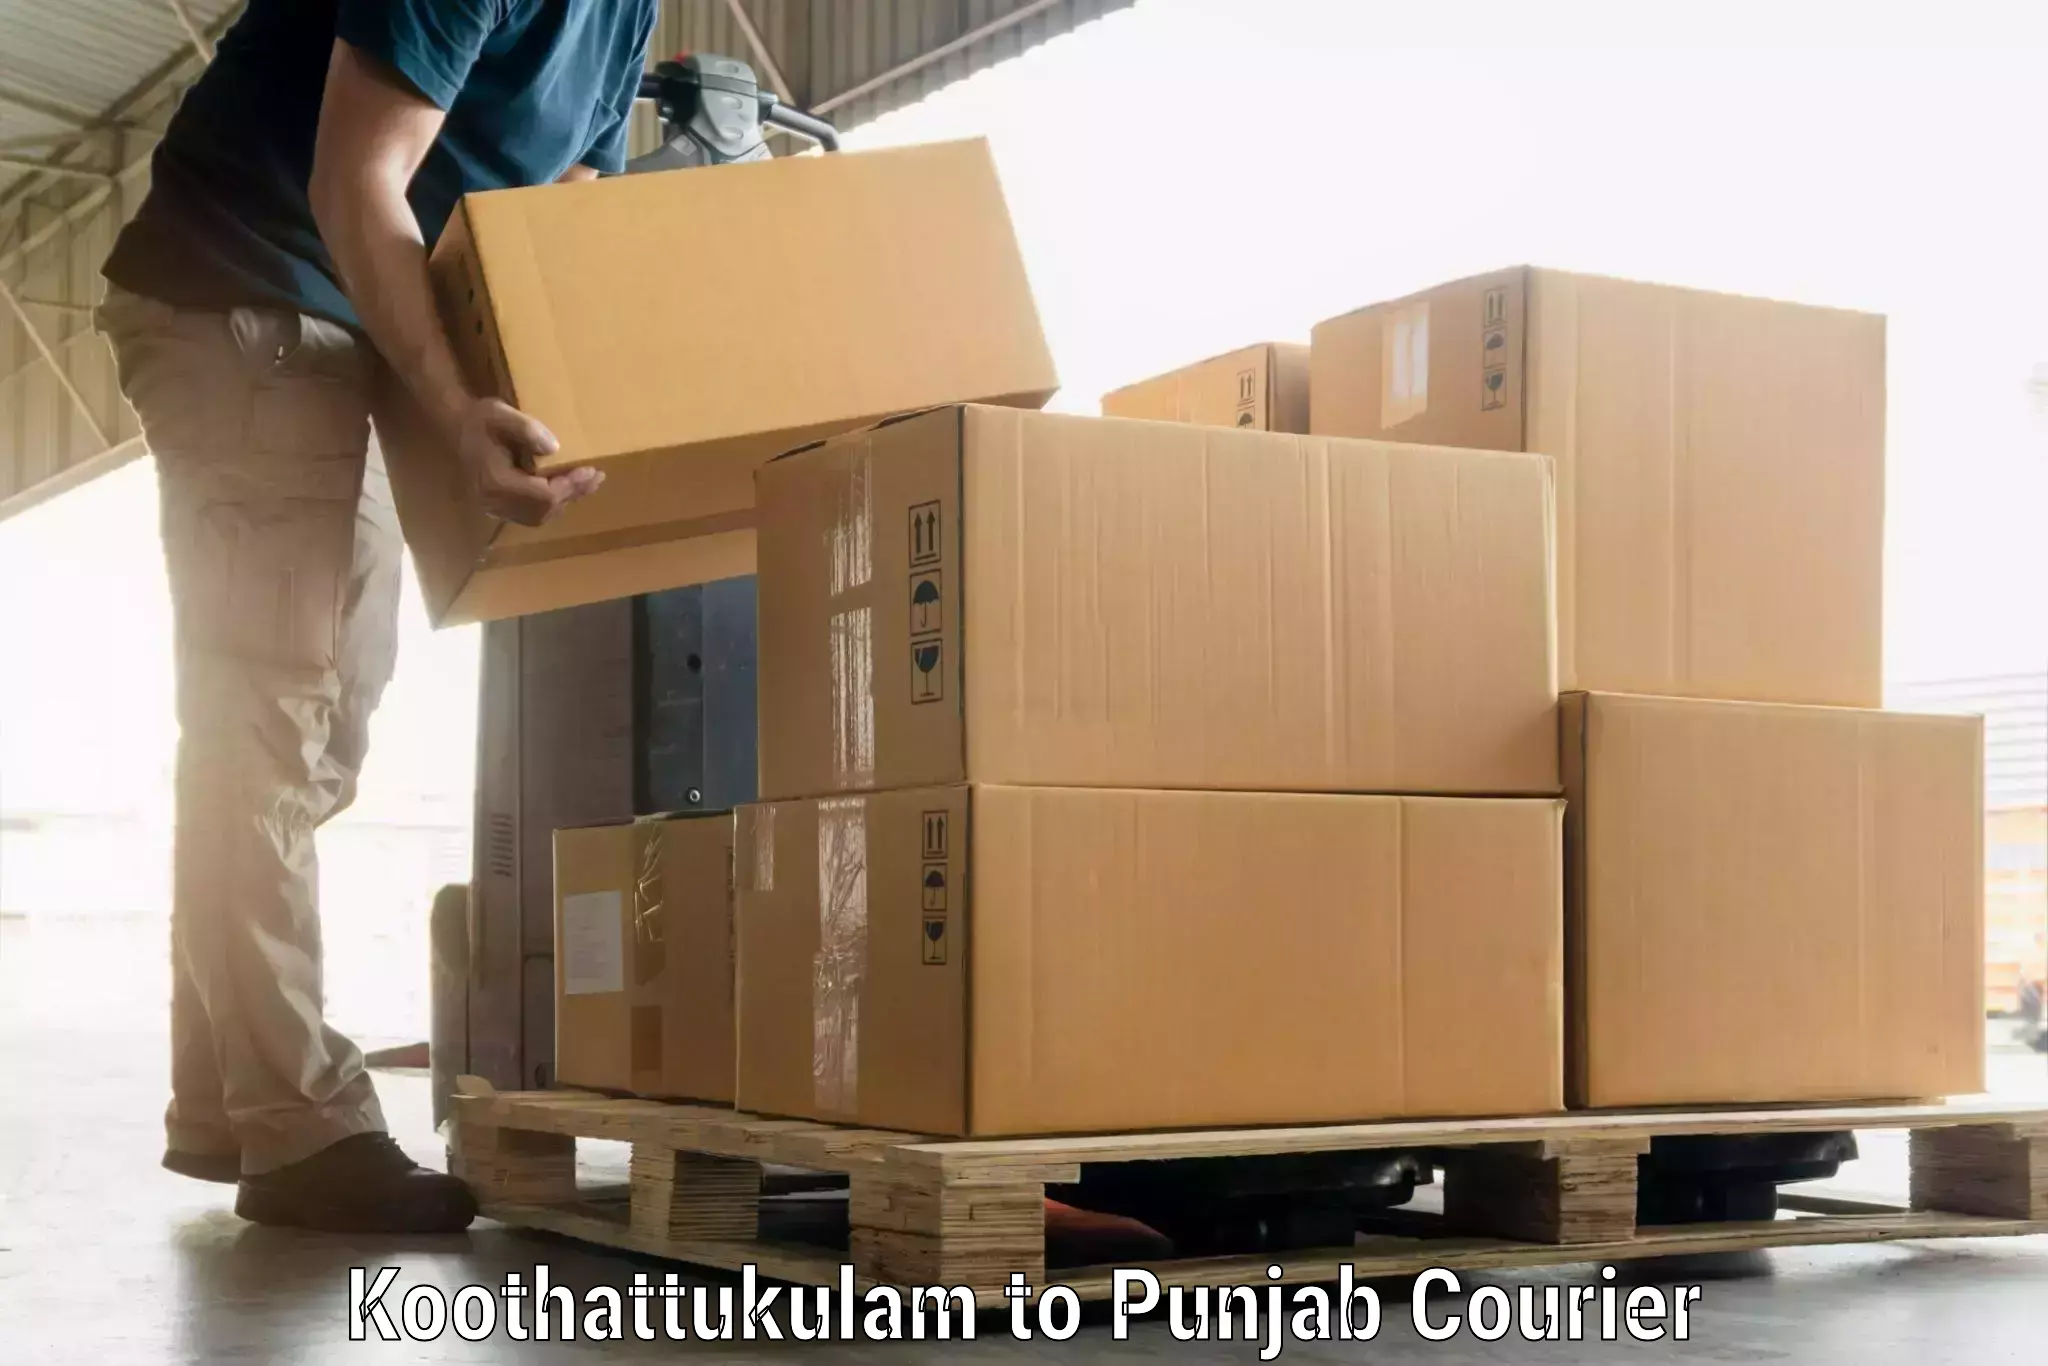 Luggage delivery news Koothattukulam to Malerkotla